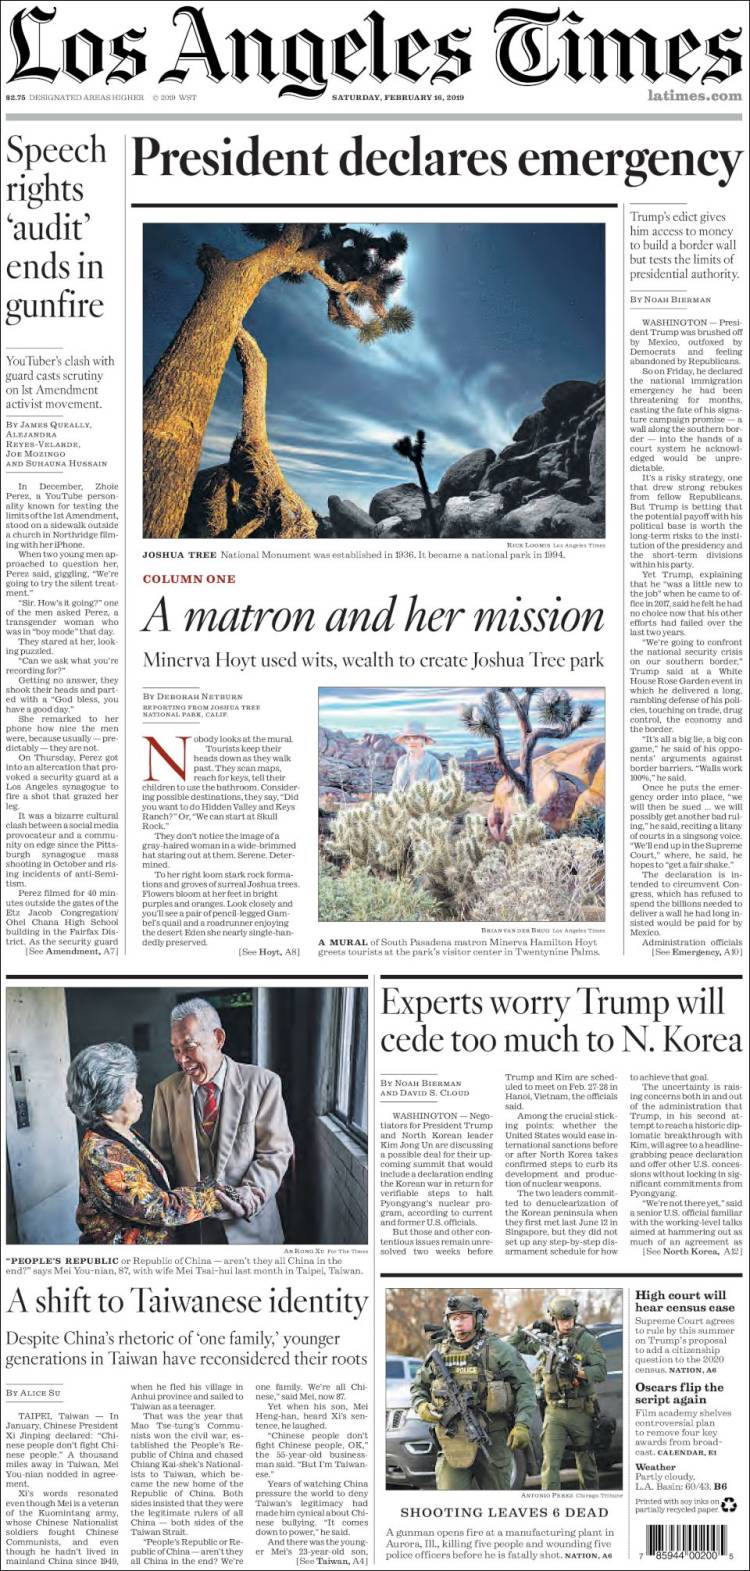 صفحه اول روزنامه لس آنجلس تایمز/ ترامپ اعلام وضعیت اضطراری کرد